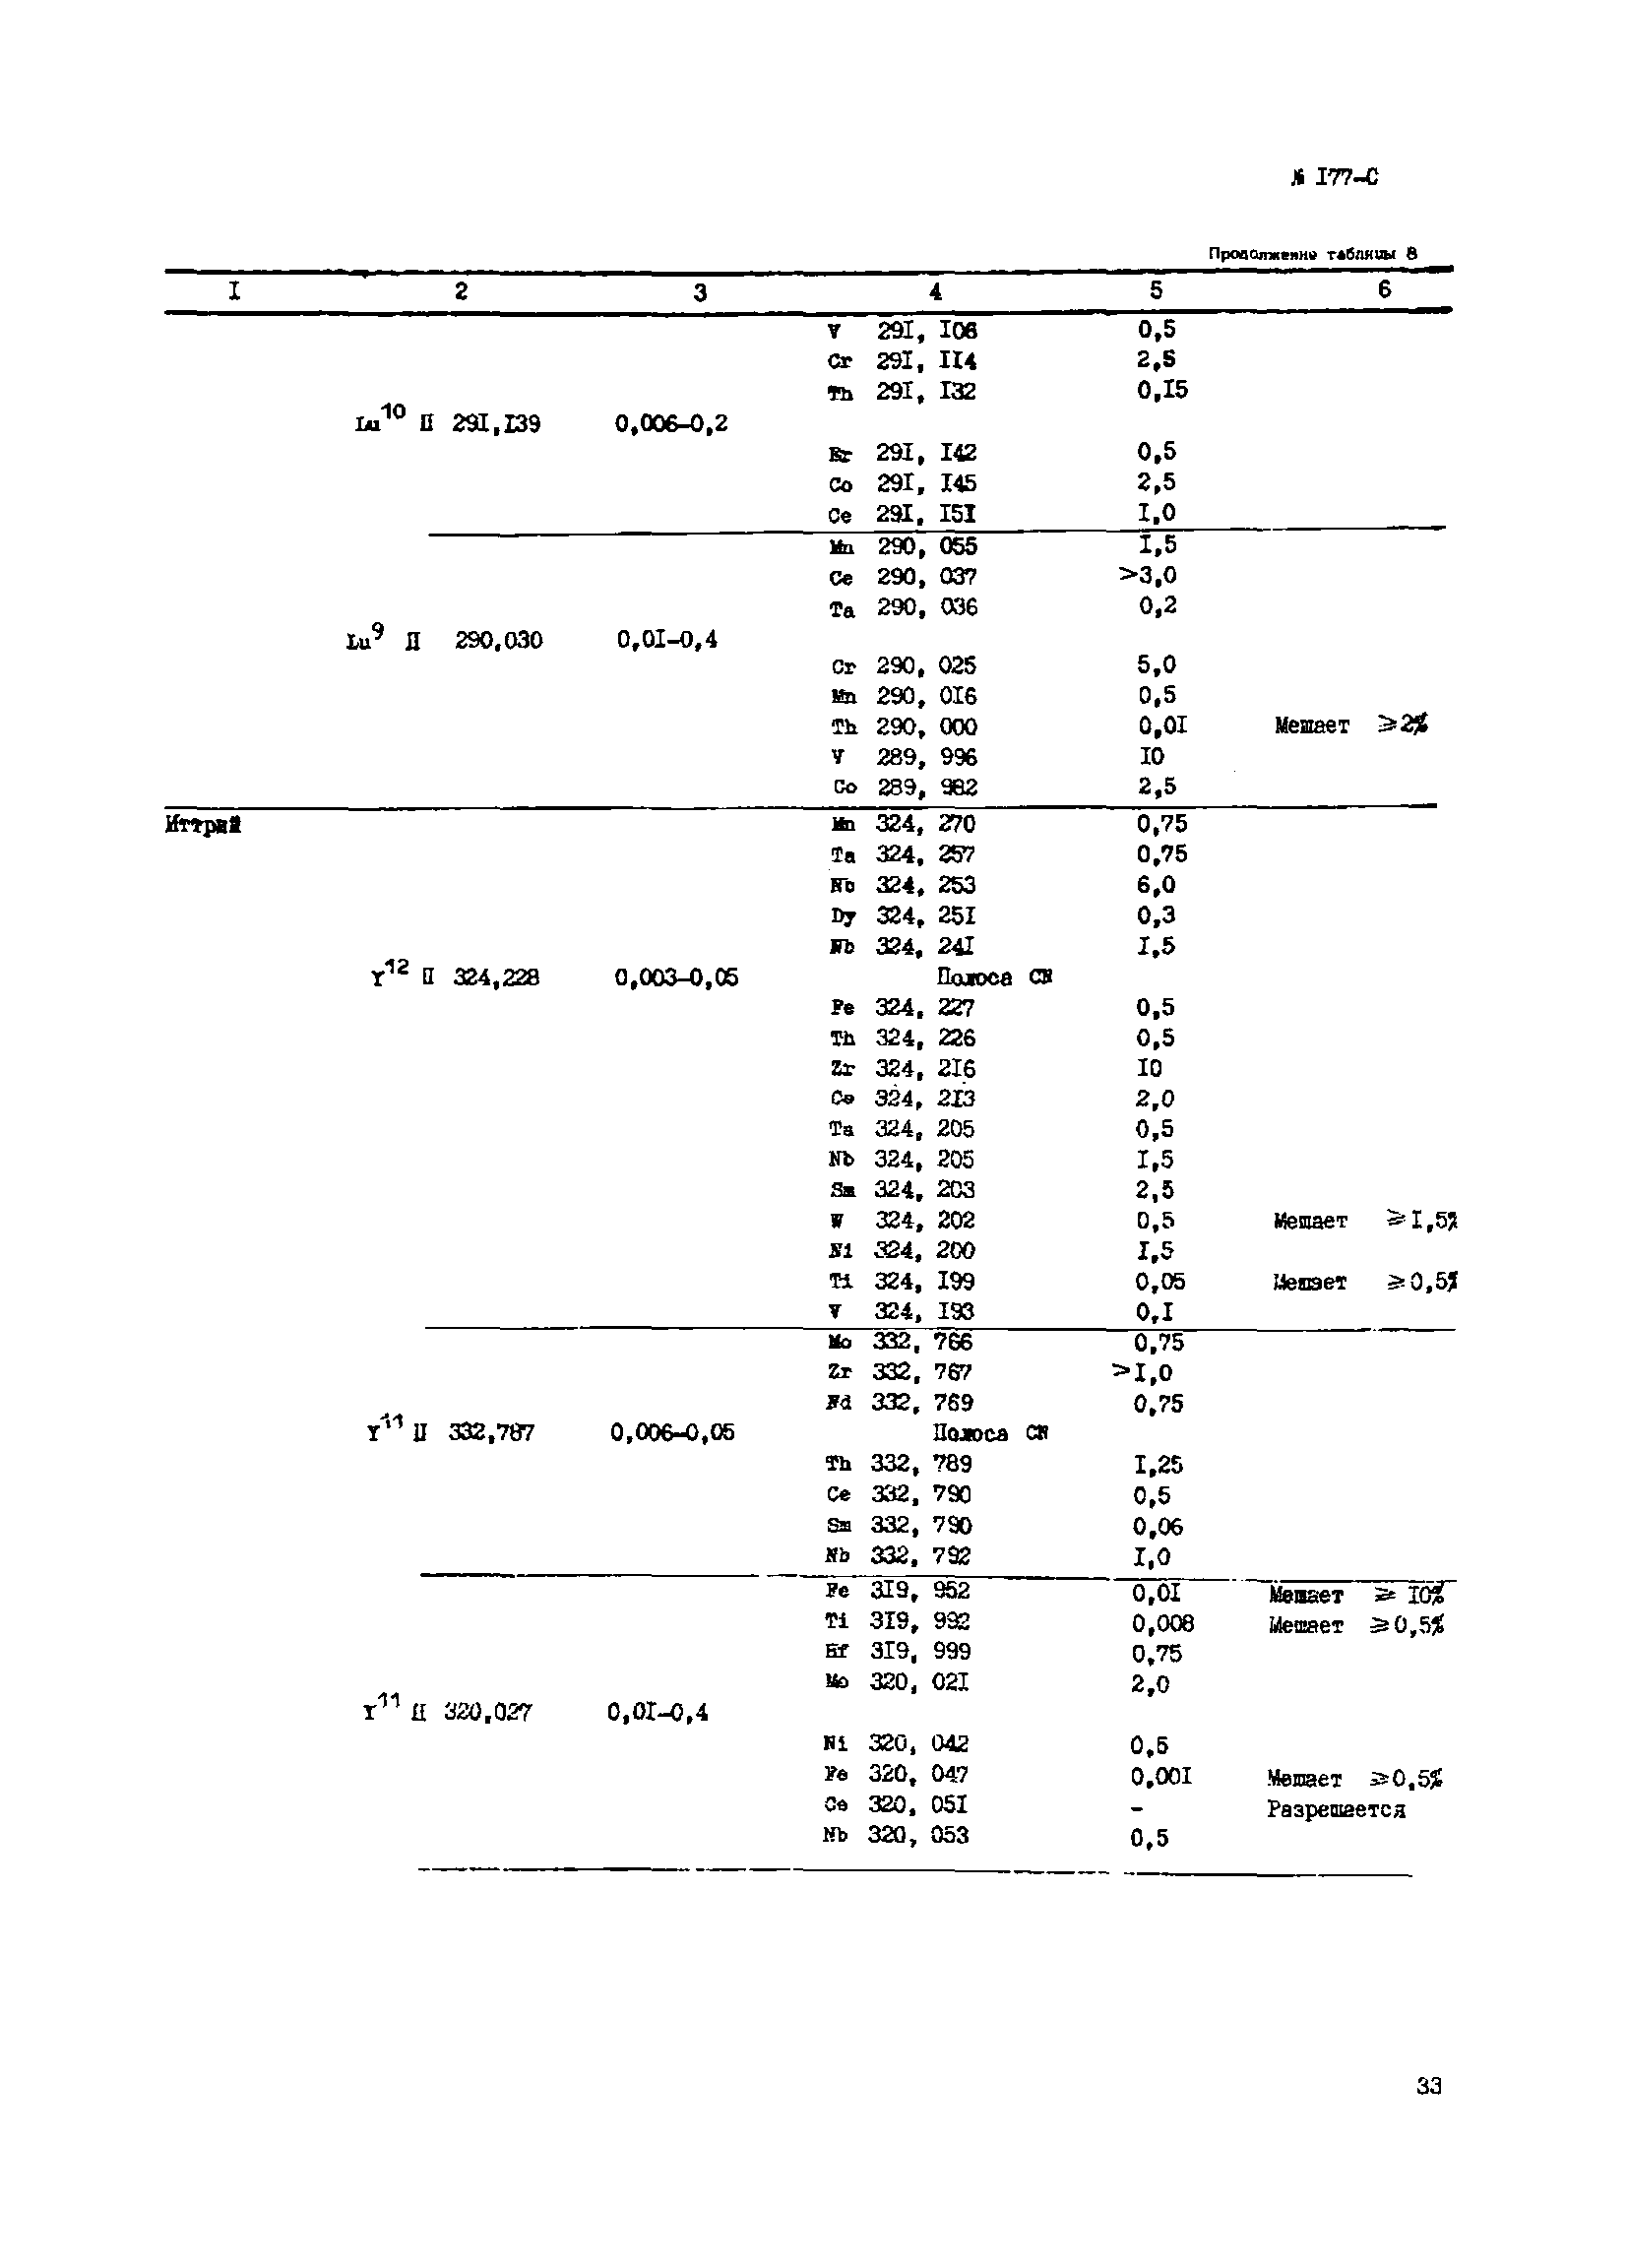 Инструкция НСАМ 177-С